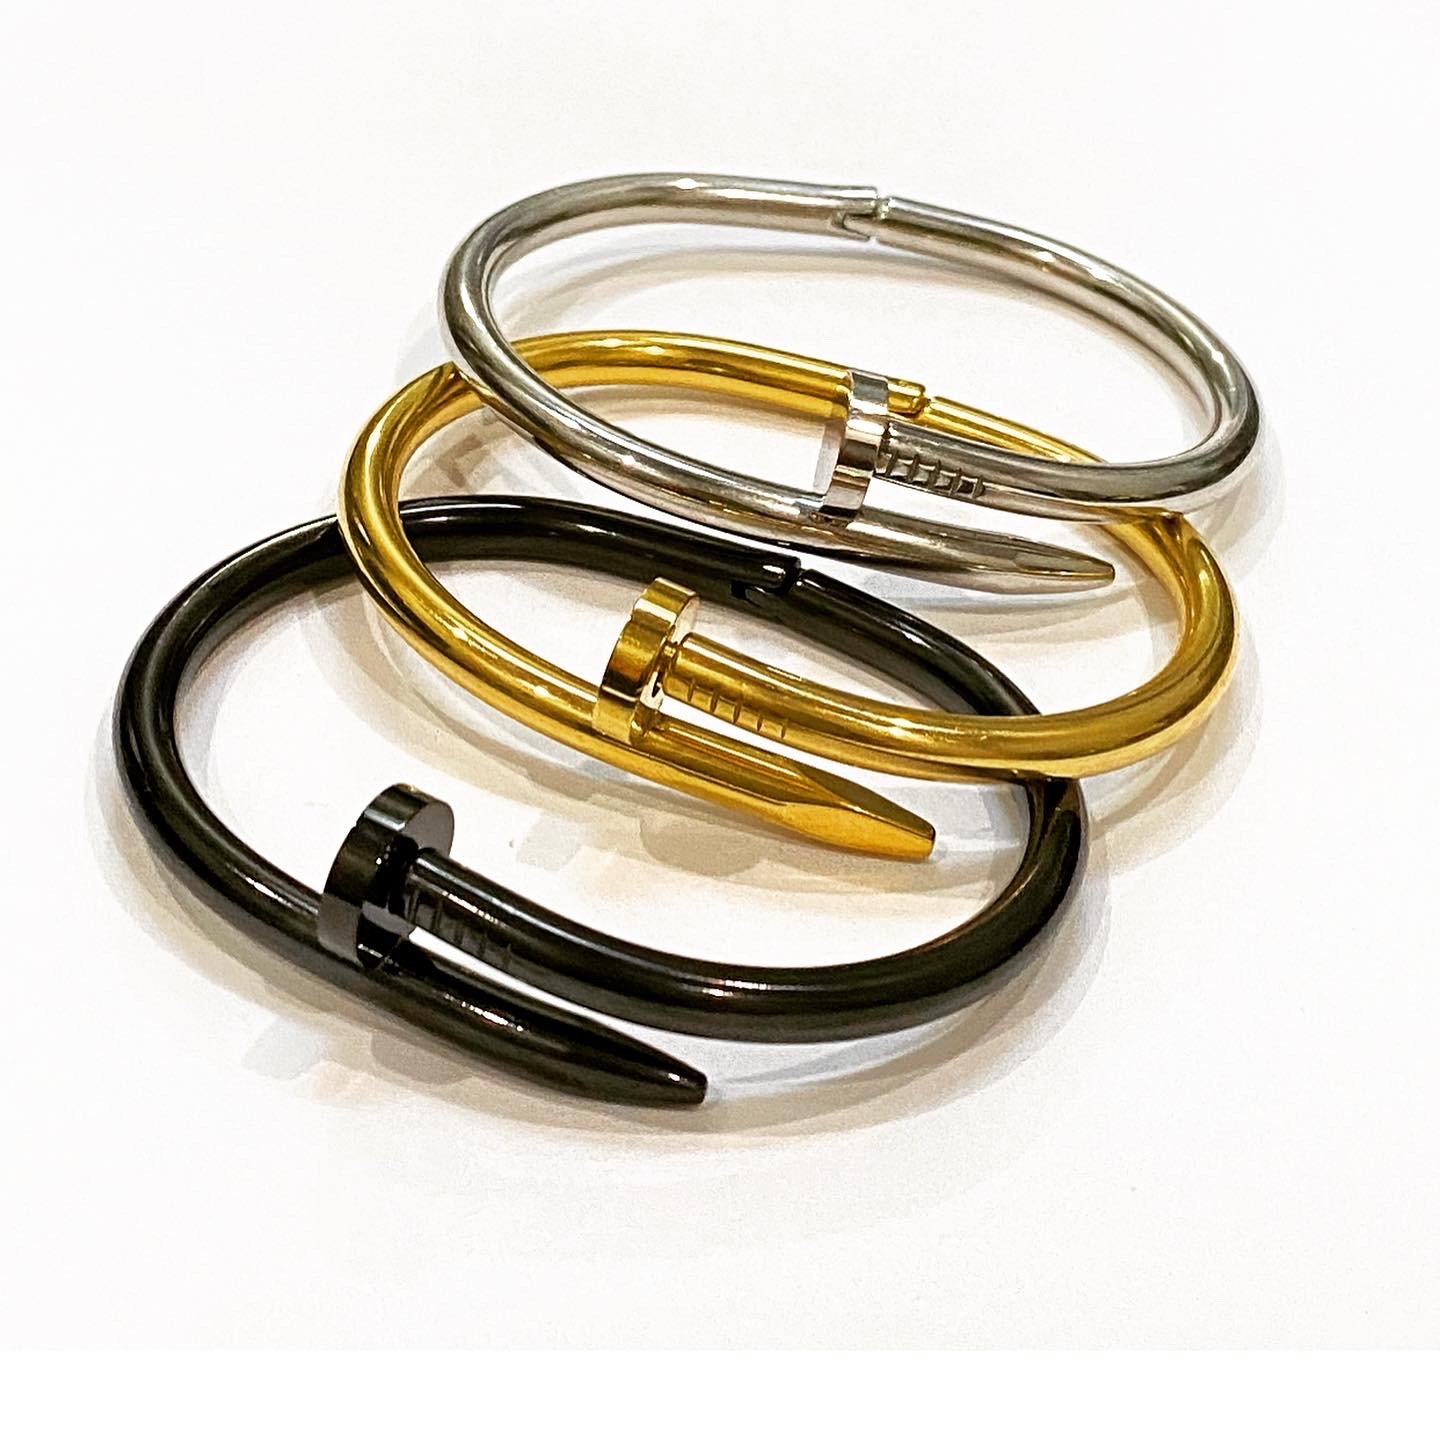 STEEL BRACELET FOLLOWING CARTIER MODELS. Jewellery & Gemstones - Bracelets  - Auctionet